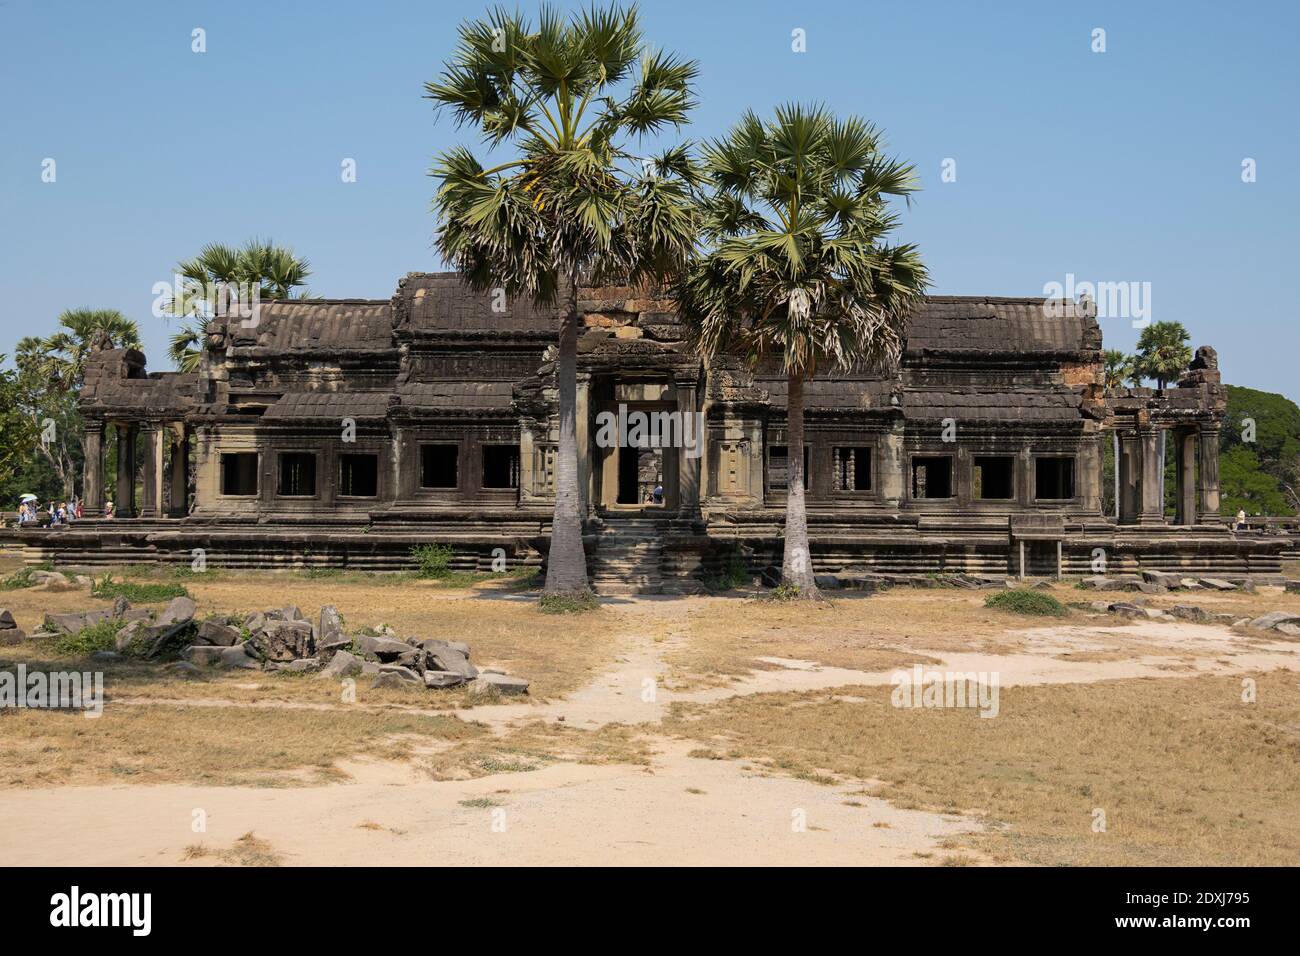 Palmeras fuera de uno de los templos de Angkor Wat Foto de stock